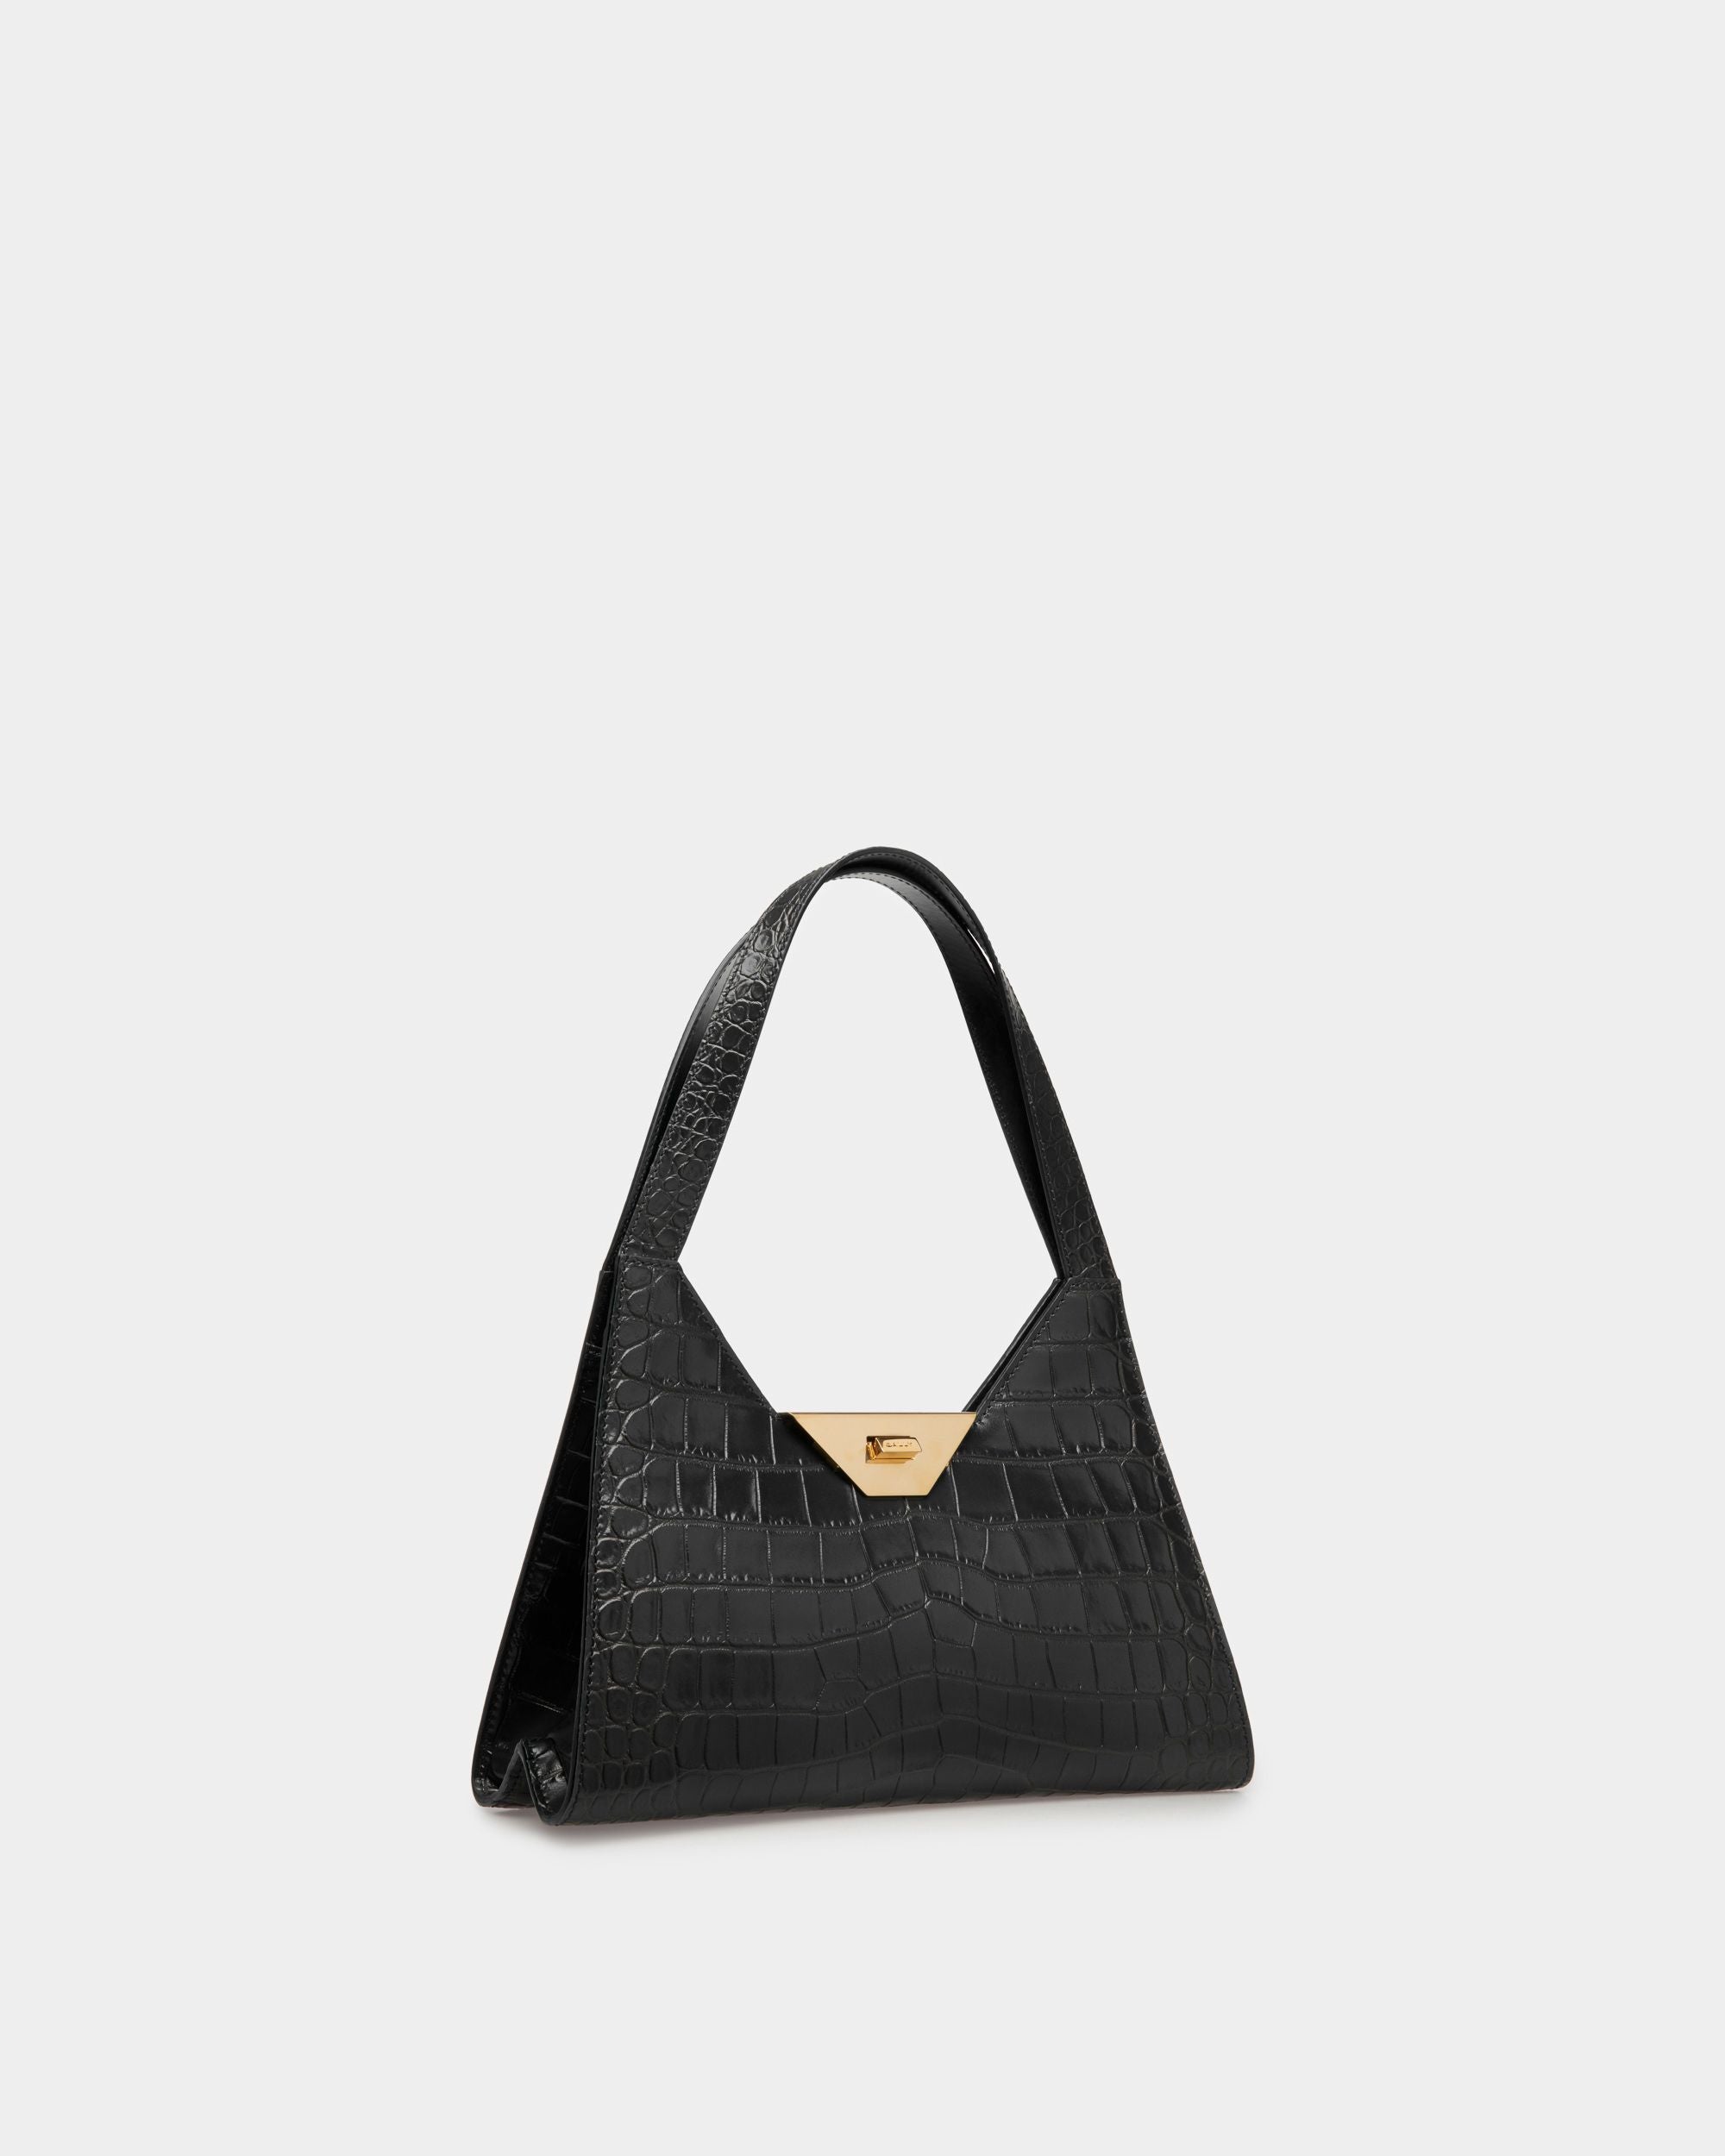 Trilliant Shoulder Bag | Women's Shoulder Bag | Black Leather | Bally | Still Life 3/4 Front